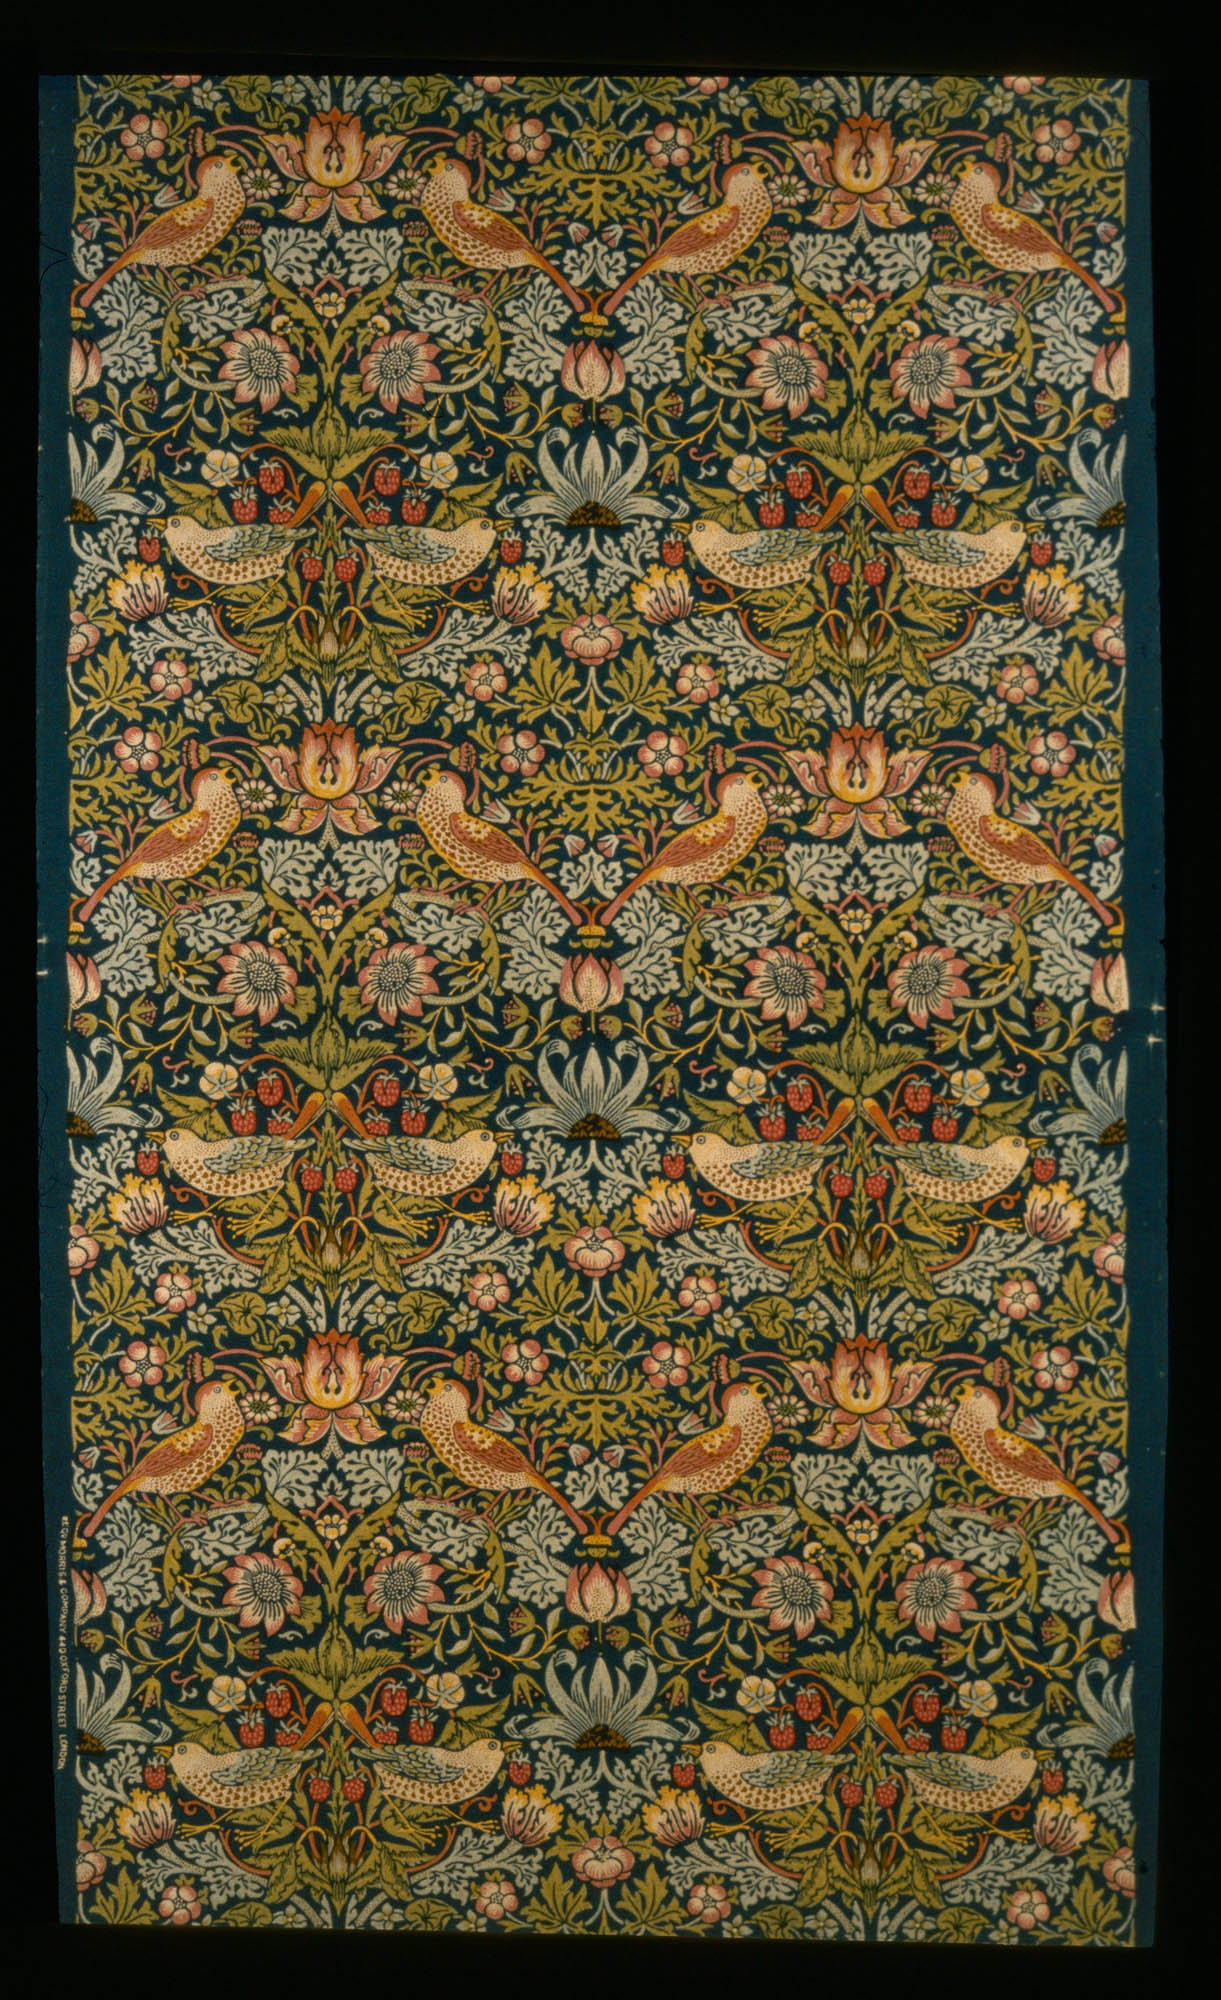 Honeysuckle William Morris Furnishing fabric